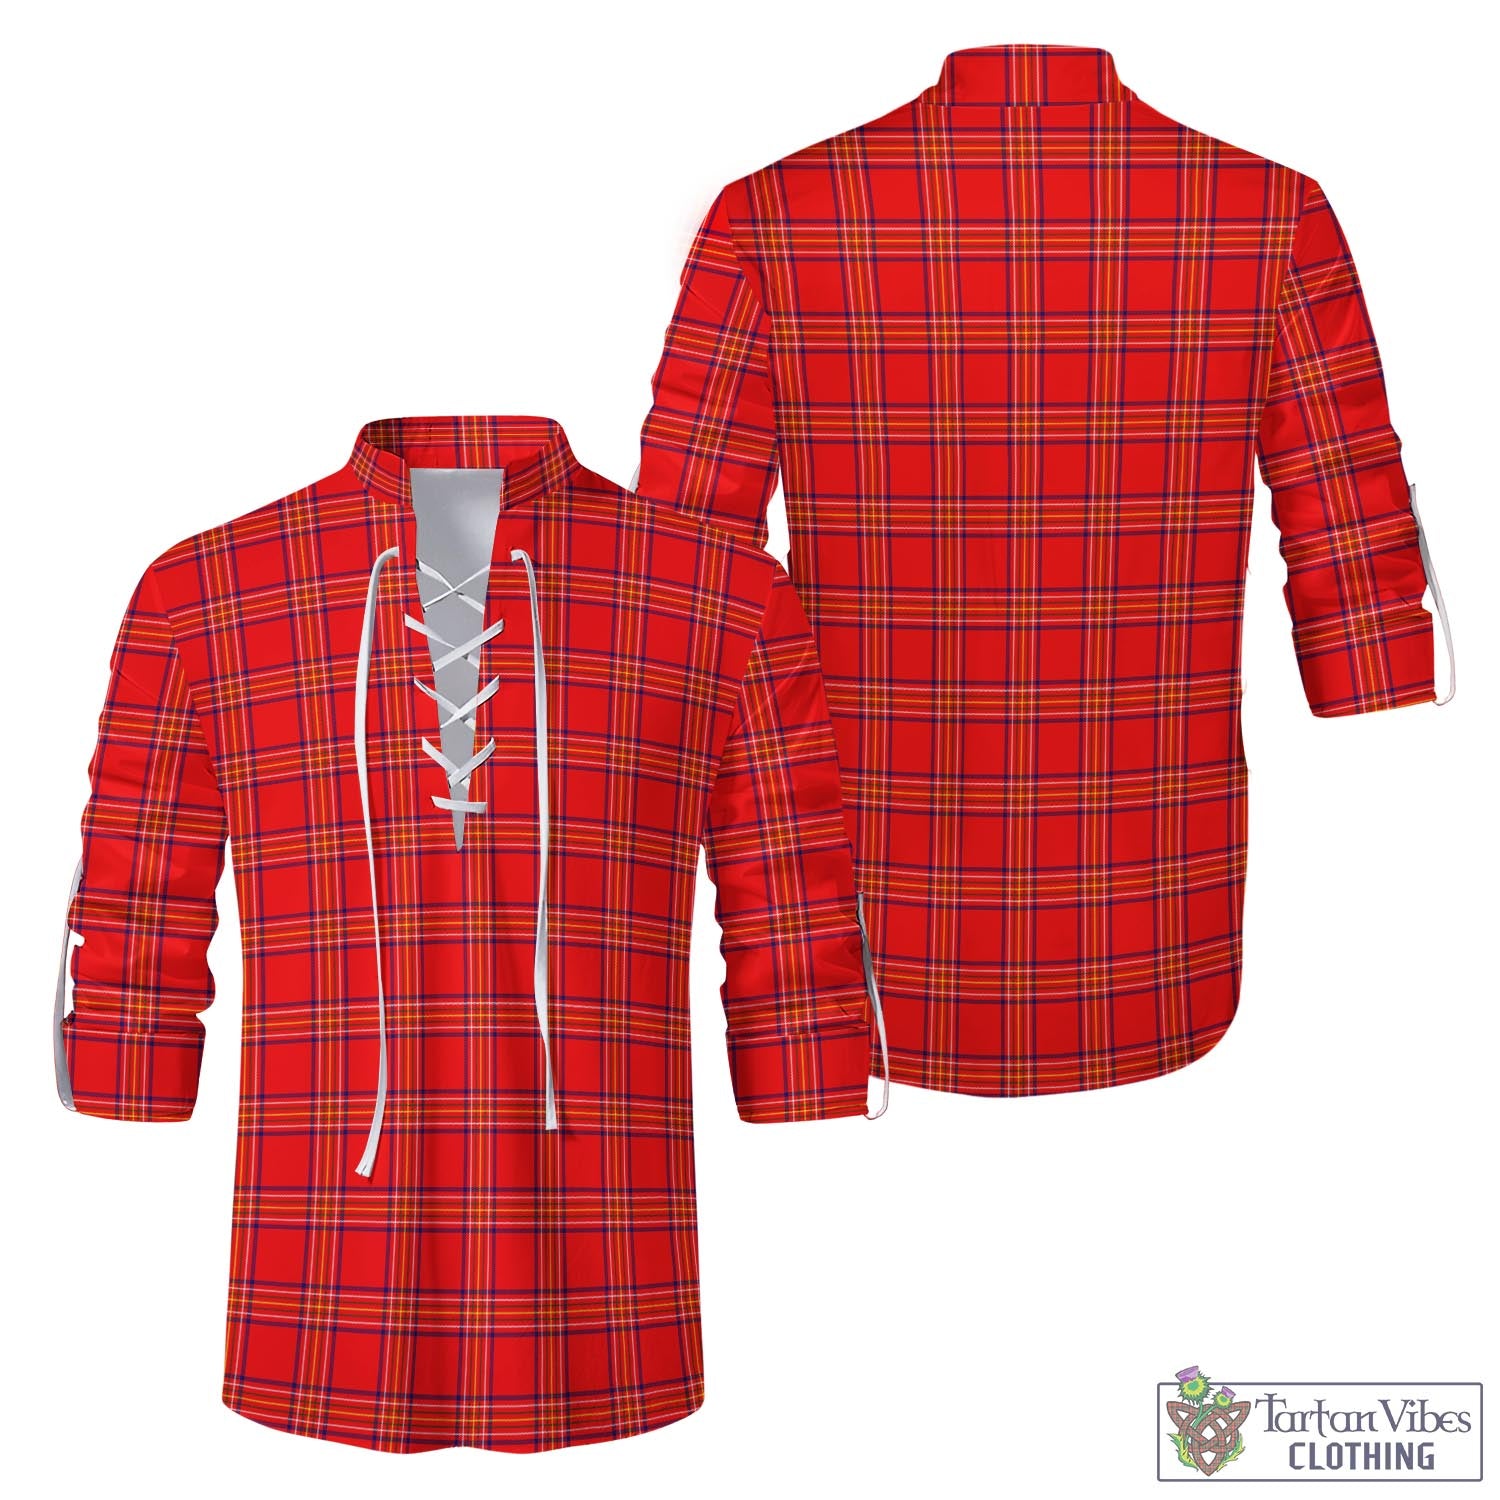 Tartan Vibes Clothing Burnett Modern Tartan Men's Scottish Traditional Jacobite Ghillie Kilt Shirt